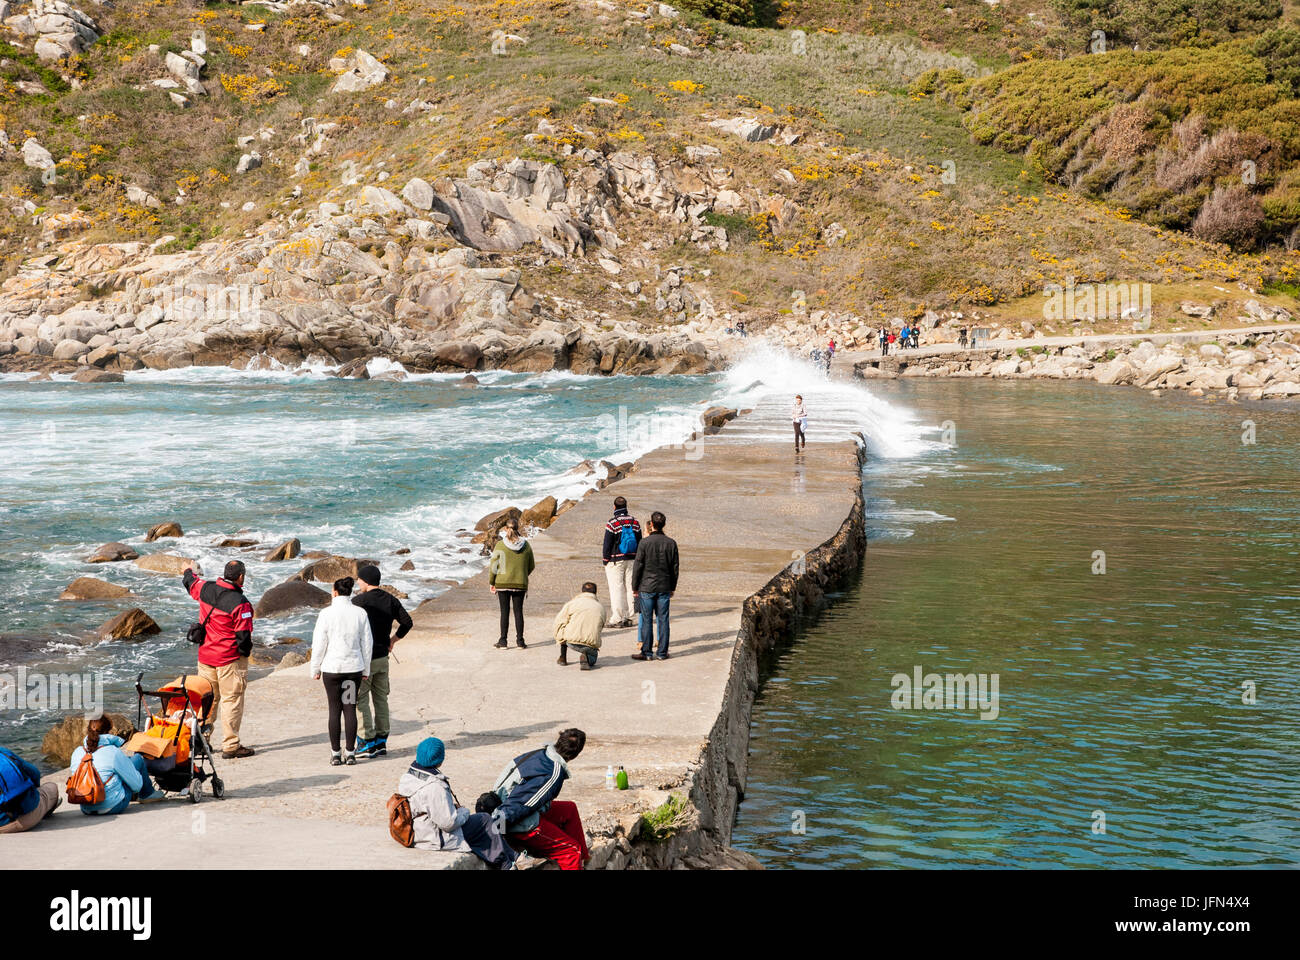 VIGO, Spanien - 7. APRIL: Menschen warten, um den Pfad auf das Meer zu überqueren, ohne nass von der Welle. Aufgenommen am Cies Inseln Naturpark, Galizien, Spanien Stockfoto